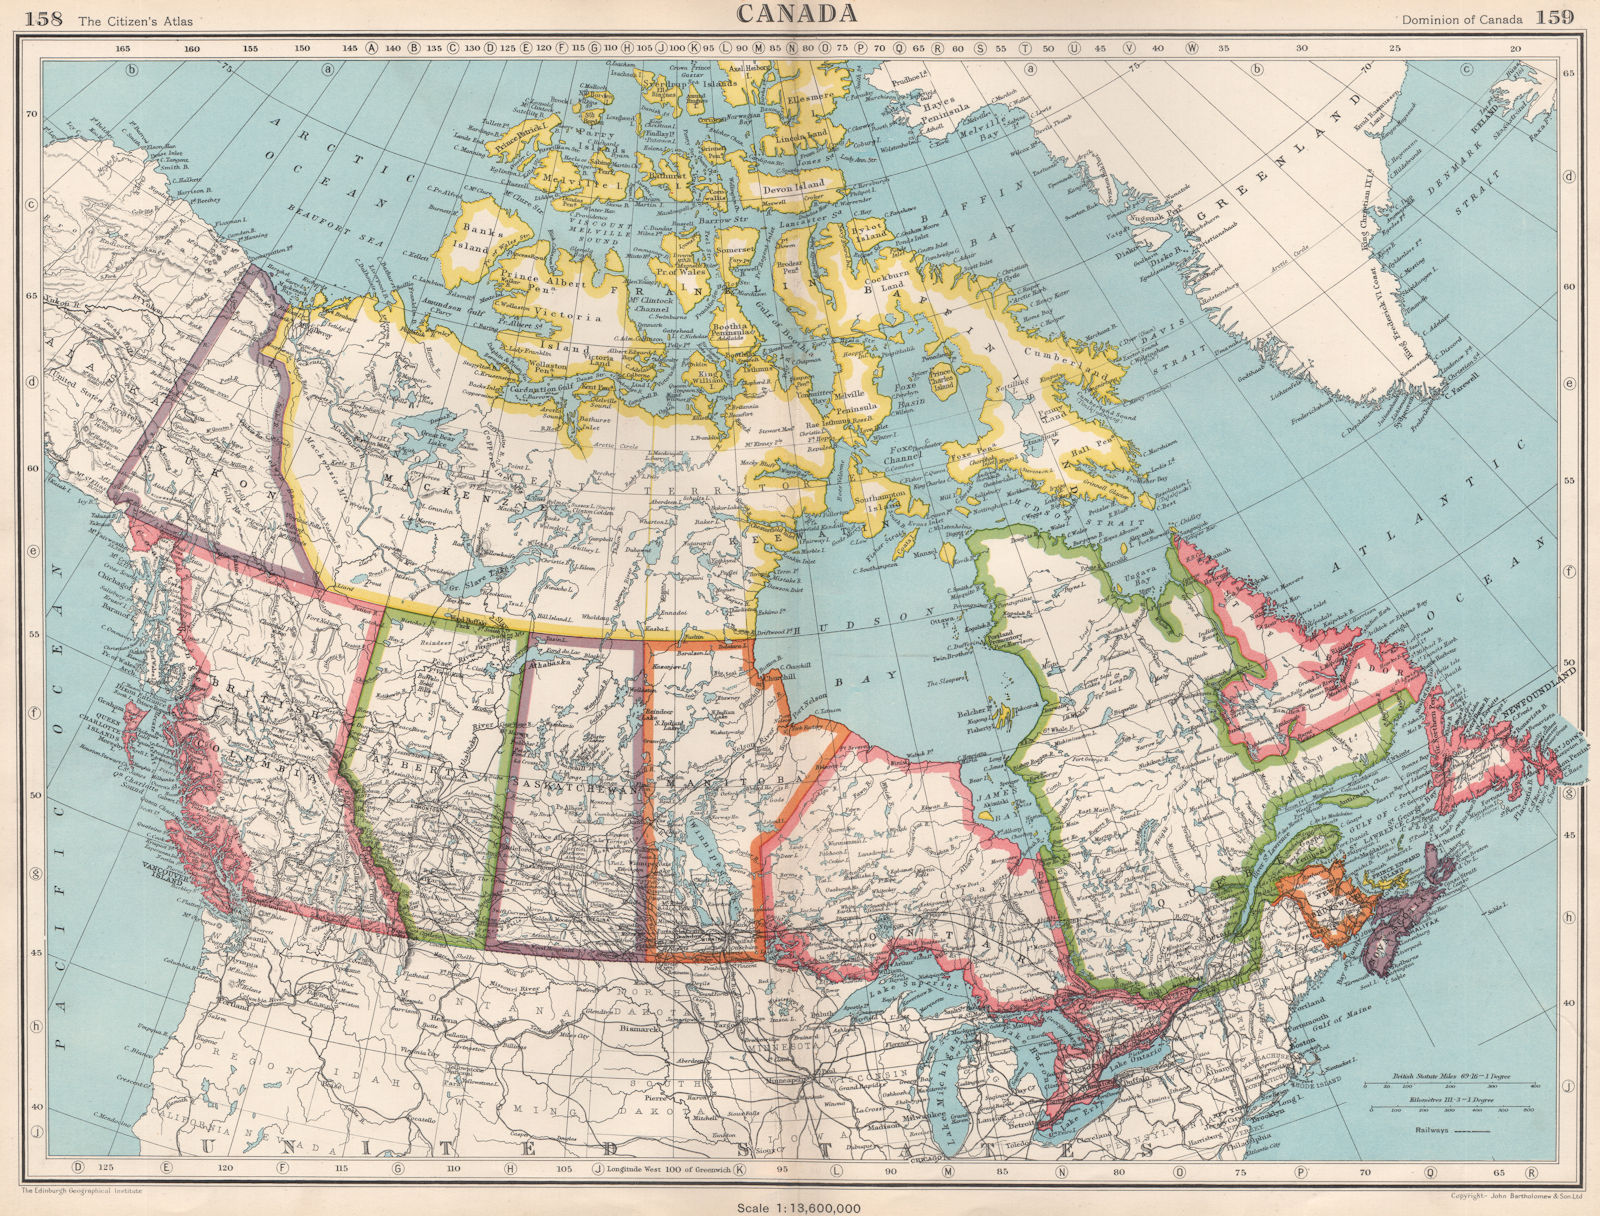 CANADA. showing provinces & railways. BARTHOLOMEW 1952 old vintage map chart